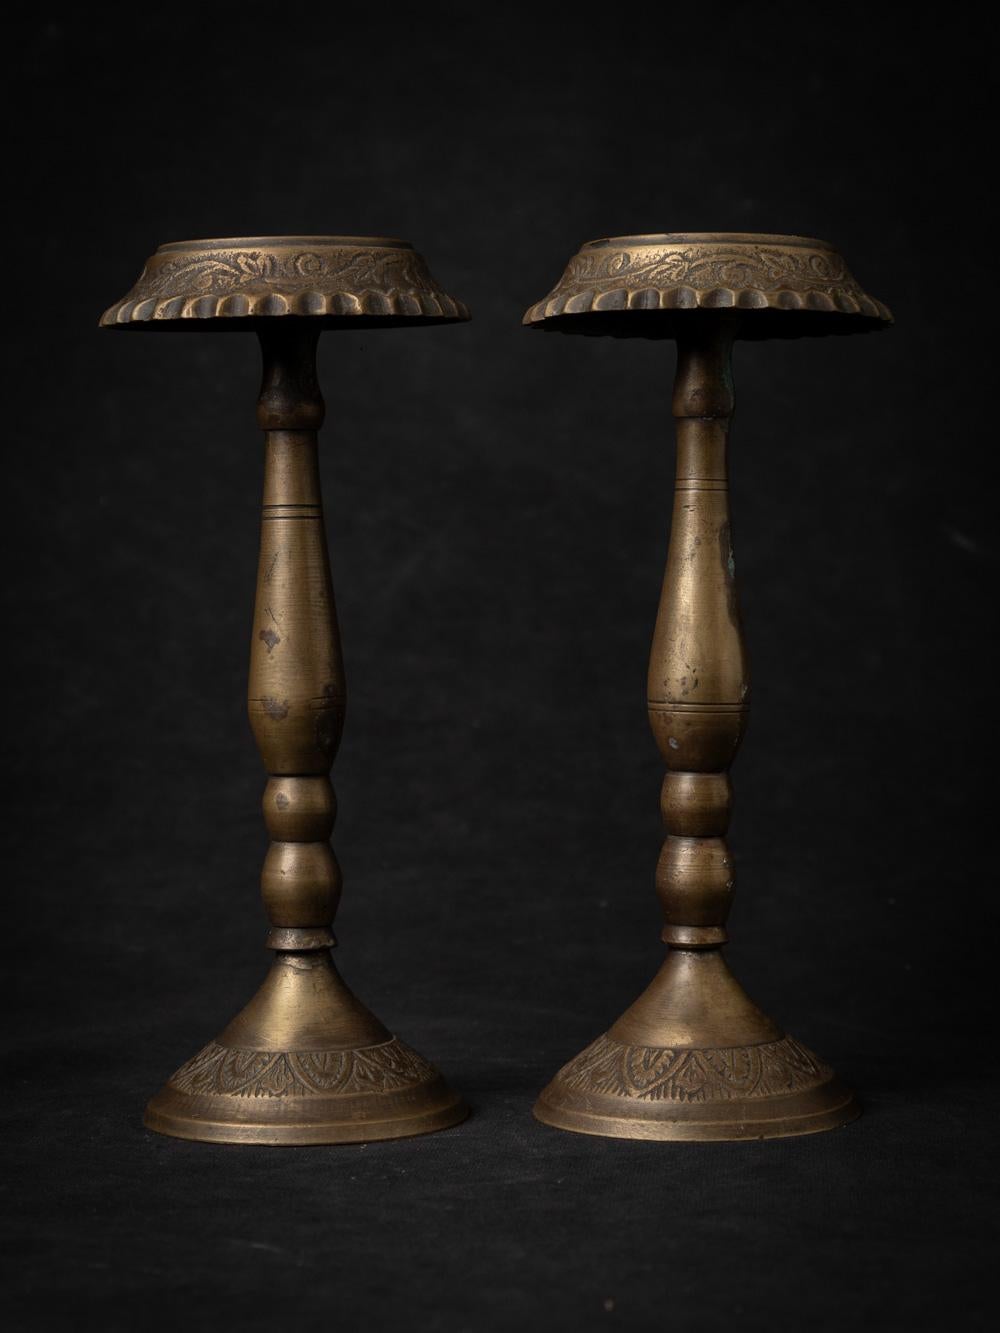 Bien sûr, voici une description plus détaillée :

Cette exquise paire de bougeoirs anciens, datant de l'Inde du XIXe siècle, témoigne de la beauté durable de l'artisanat traditionnel. Fabriqués à la main en bronze, un matériau réputé pour sa